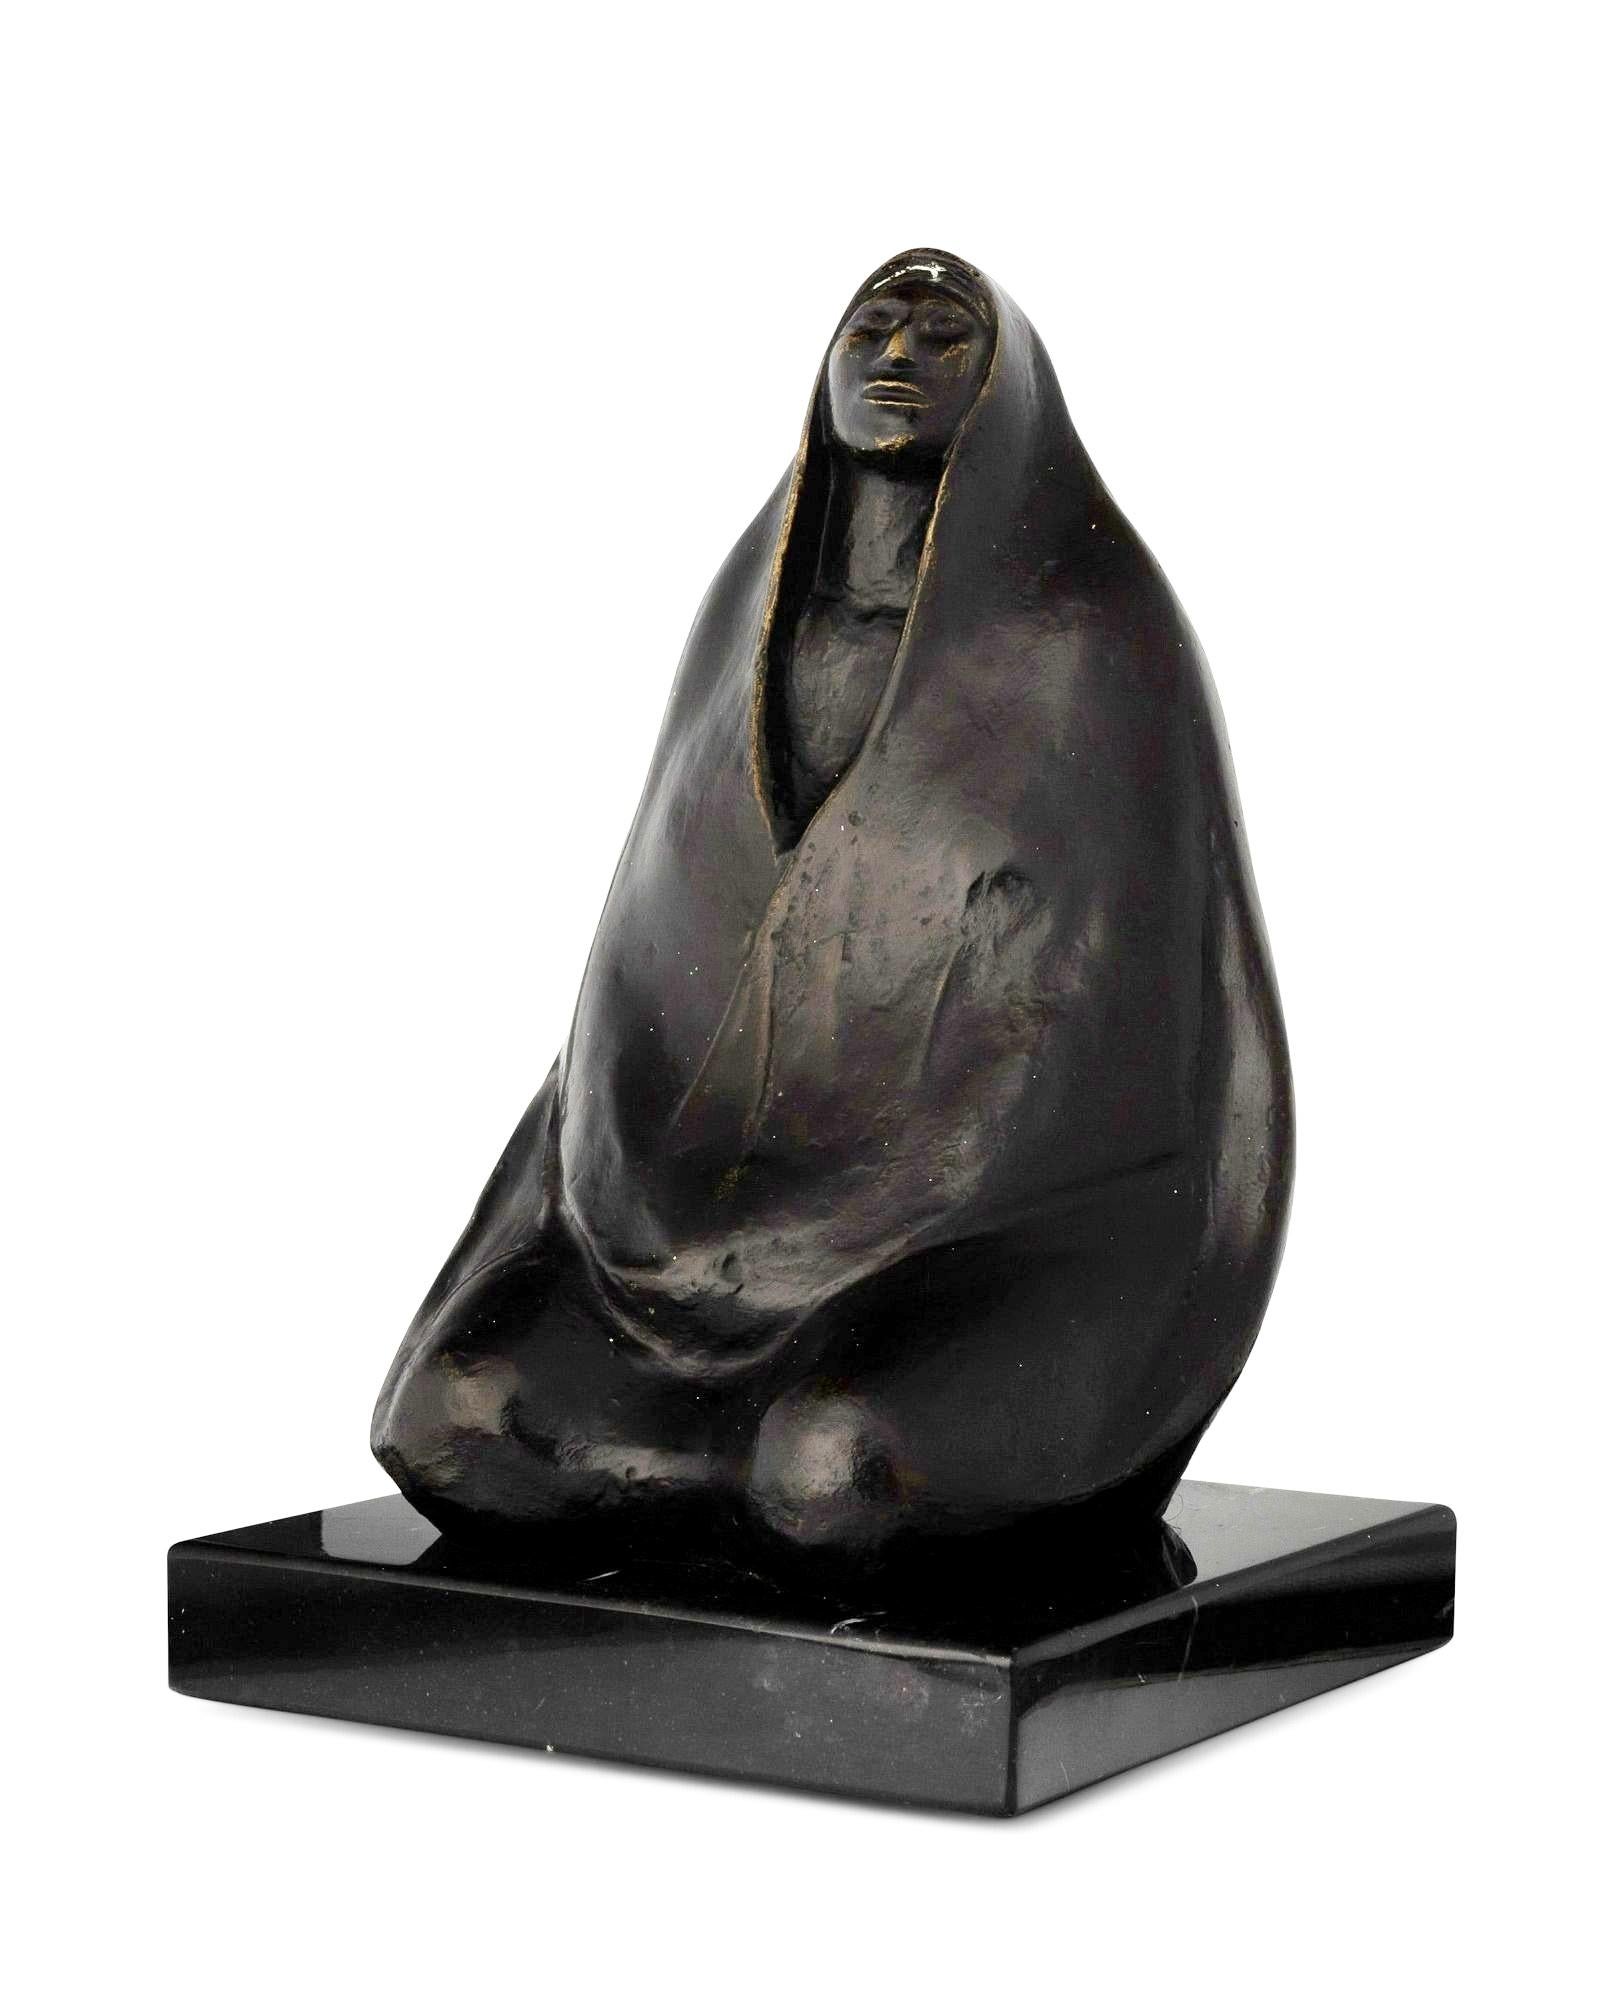 Voici une exquise sculpture en bronze de l'artiste mexicain renommé Jorge Luis Cuevas, né au Mexique en 1922. Cette pièce remarquable met en valeur le style unique de l'artiste et sa maîtrise de la sculpture, ce qui en fait un véritable trésor de